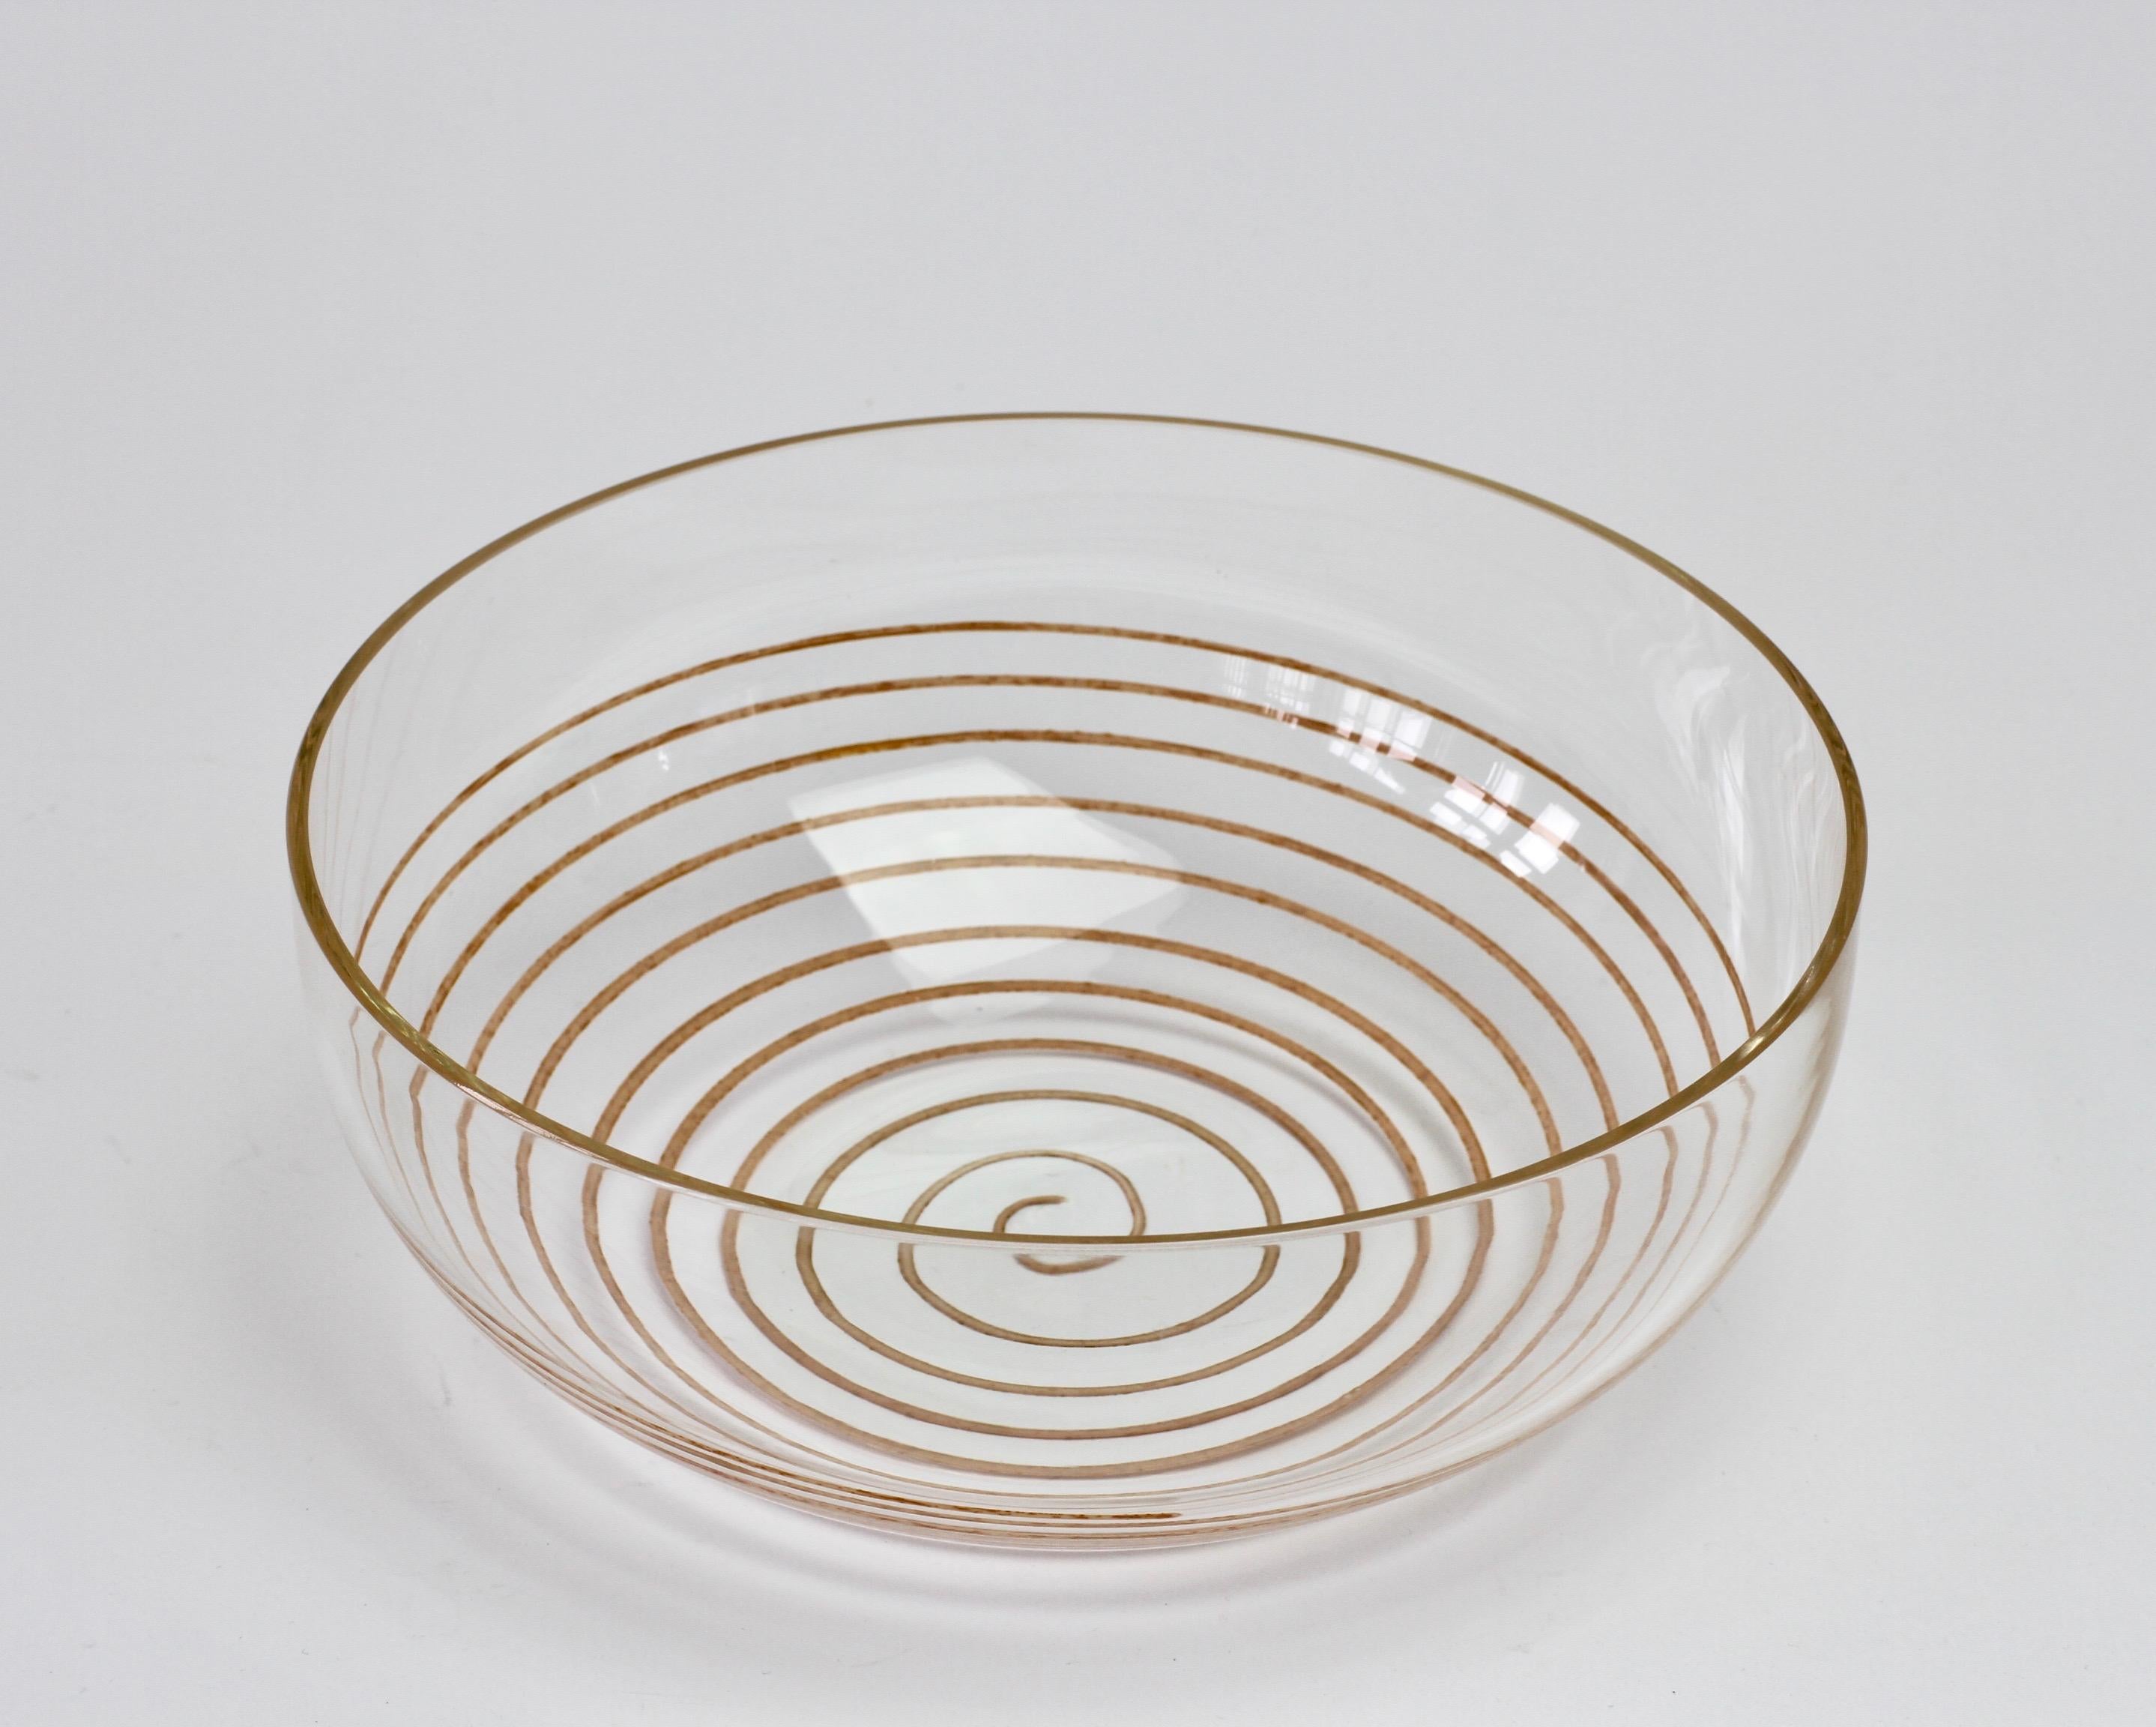 Vintage Murano-Glasschüssel aus der Mitte des Jahrhunderts von Cenedese, ca. 1970-1990. Wunderschönes klares Glas mit einer bunten Spirale als Einschluss. Simpel und doch elegant. Auf einer Arbeitsplatte aus weißem Marmor mit Obst oder Snacks würde